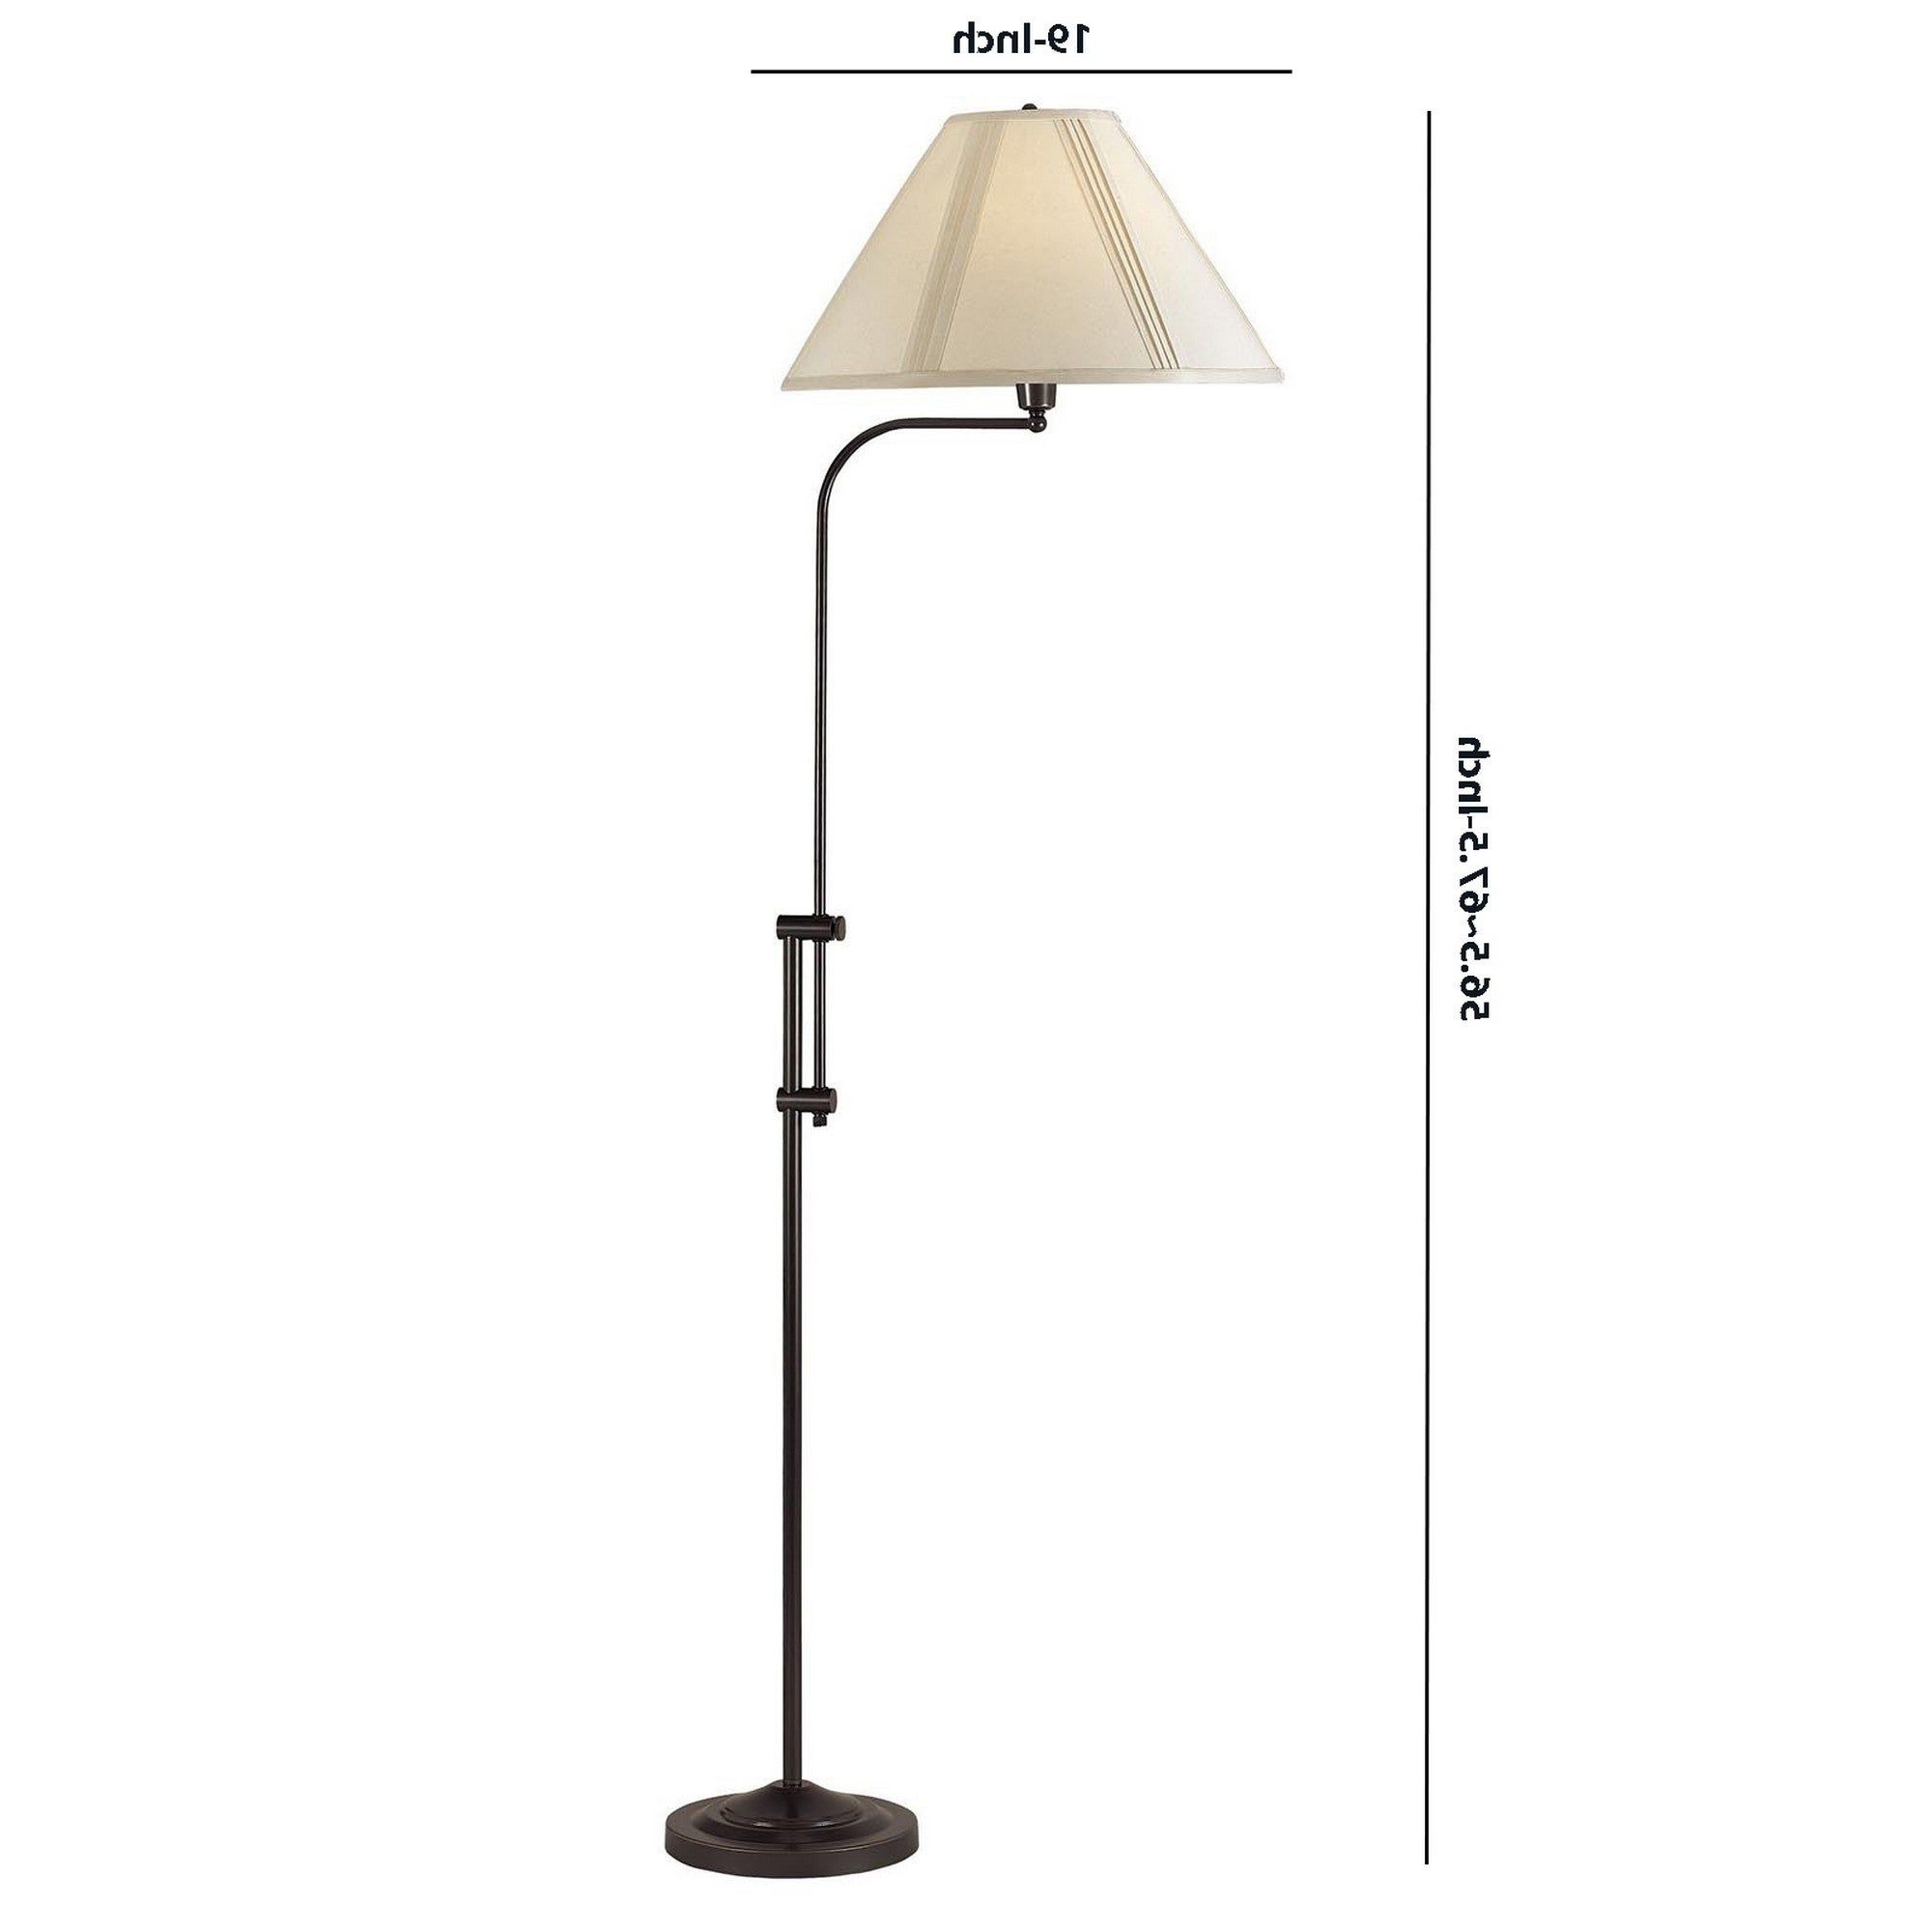 3 Way Metal Floor Lamp With And Adjustable Height Mechanism, Bronze –  Overstock – 31684760 With Regard To Adjustable Height Floor Lamps (View 1 of 20)